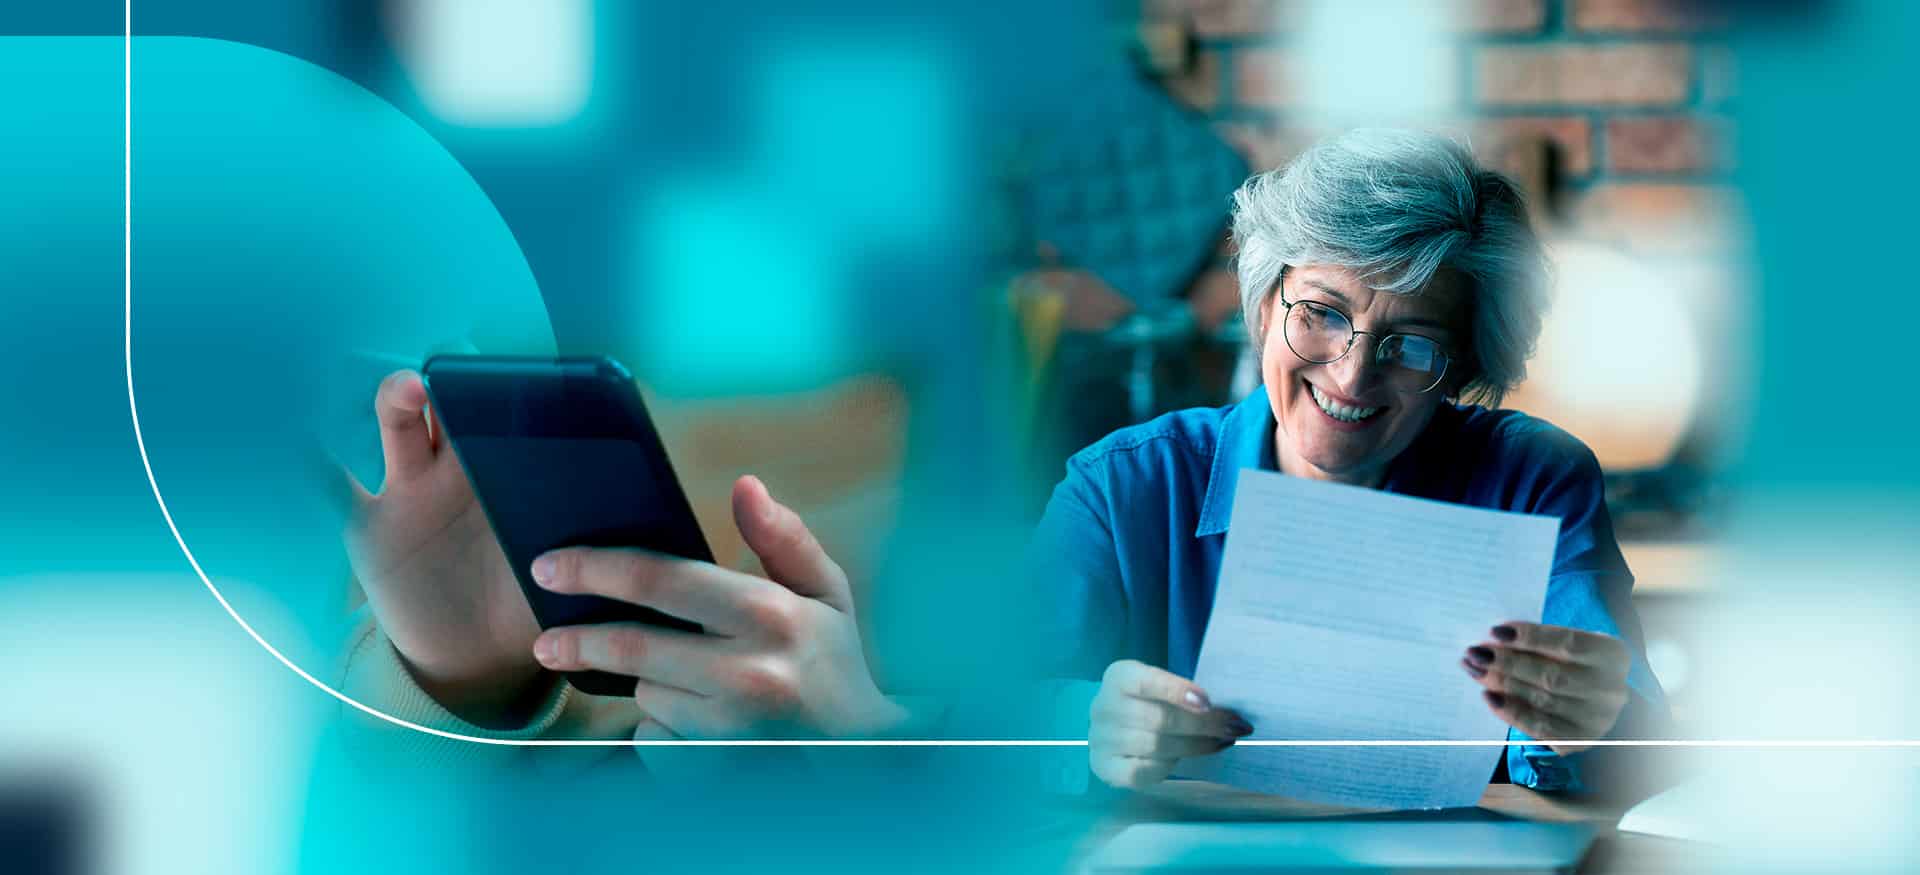 Imagens de mulher de meia idade lendo carta e mãos de outra pessoa usando o smartphone para ilustrar conteúdo sobre marketing humanizado.